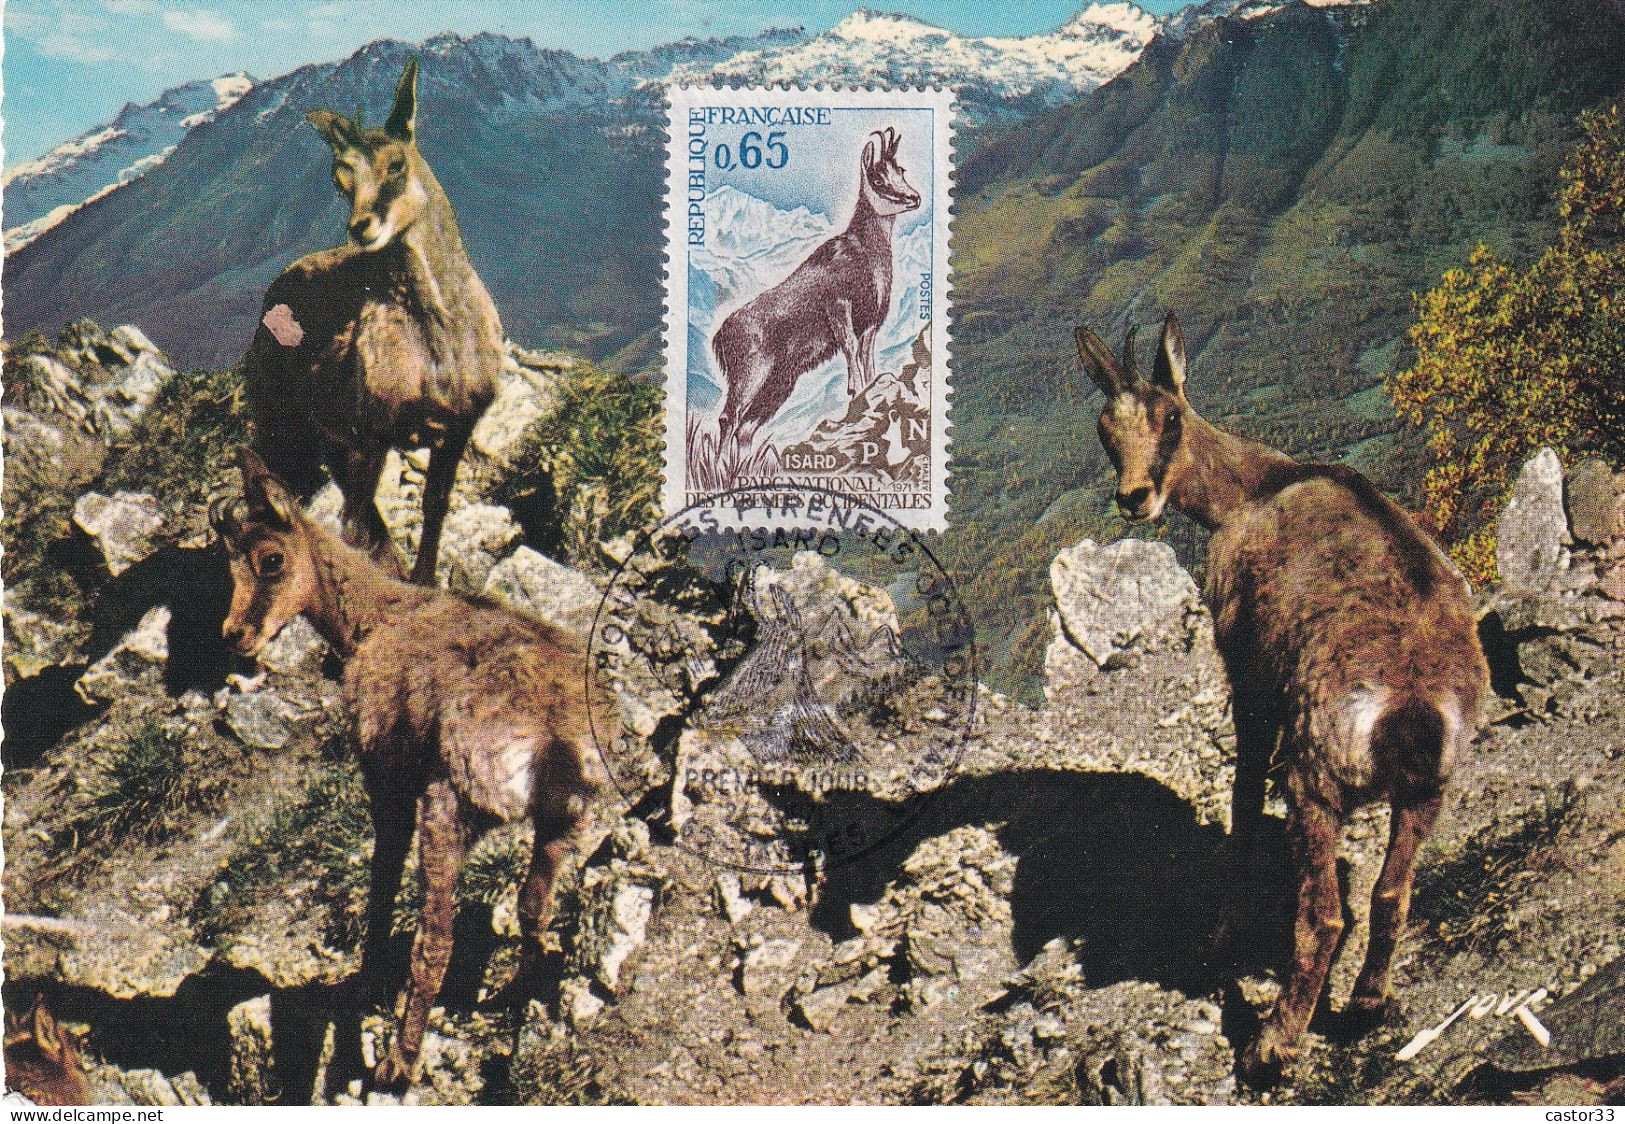 1er Jour, ISARD, Parc National Des Pyrénées Occidentales - 1970-1979